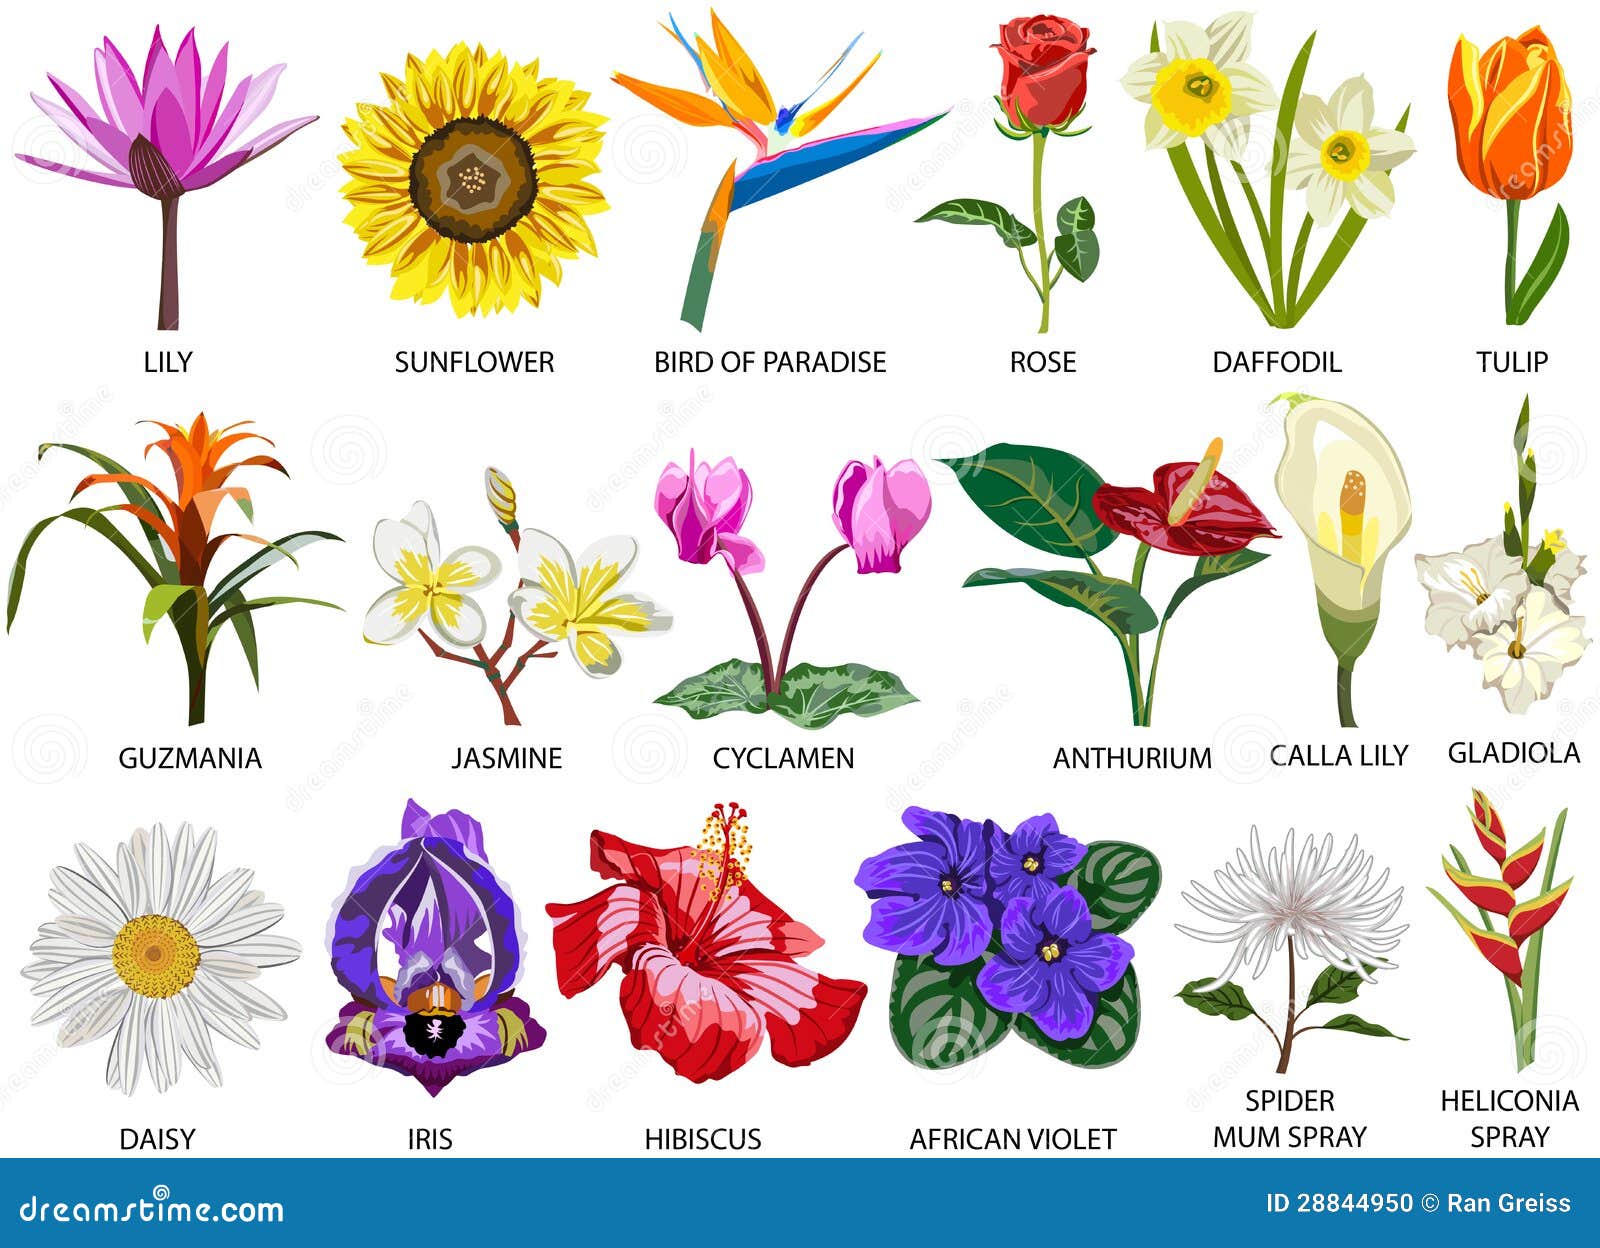 18 Specie Di Fiori Variopinti Illustrazione di Stock - Illustrazione di cyclamen, daffodil: 28844950